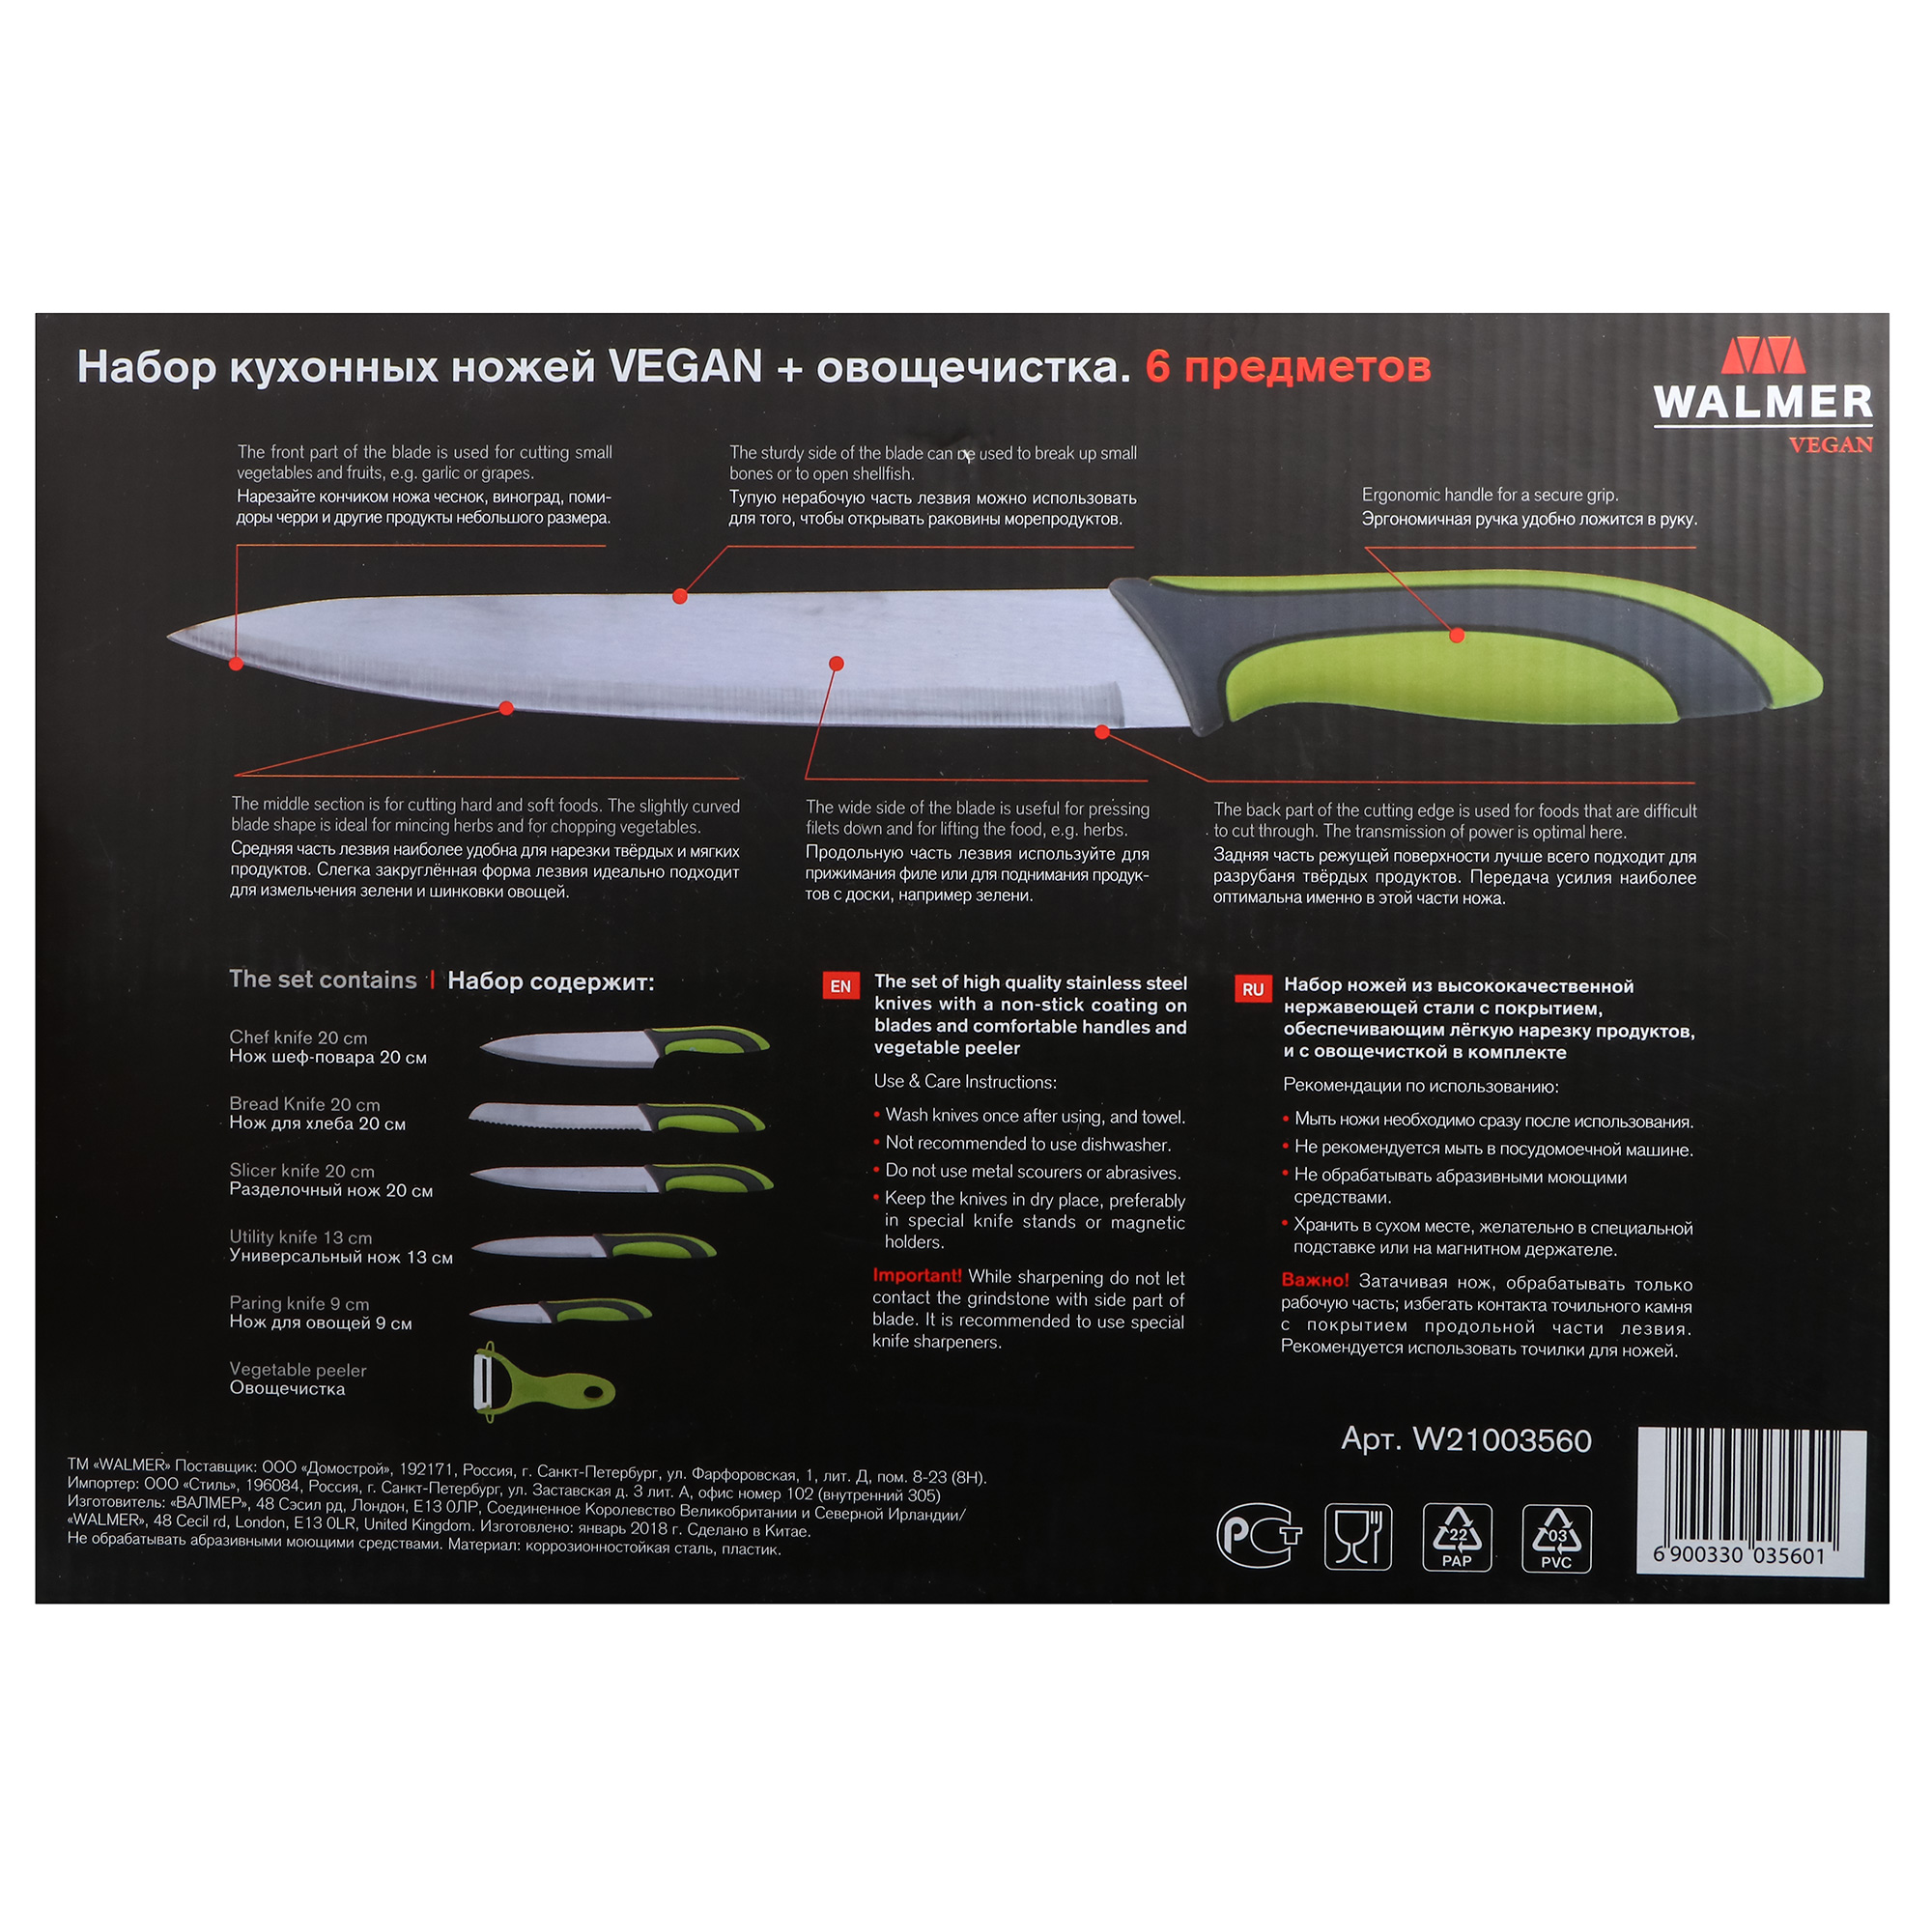 фото Набор ножей walmer vegan с овощечисткой